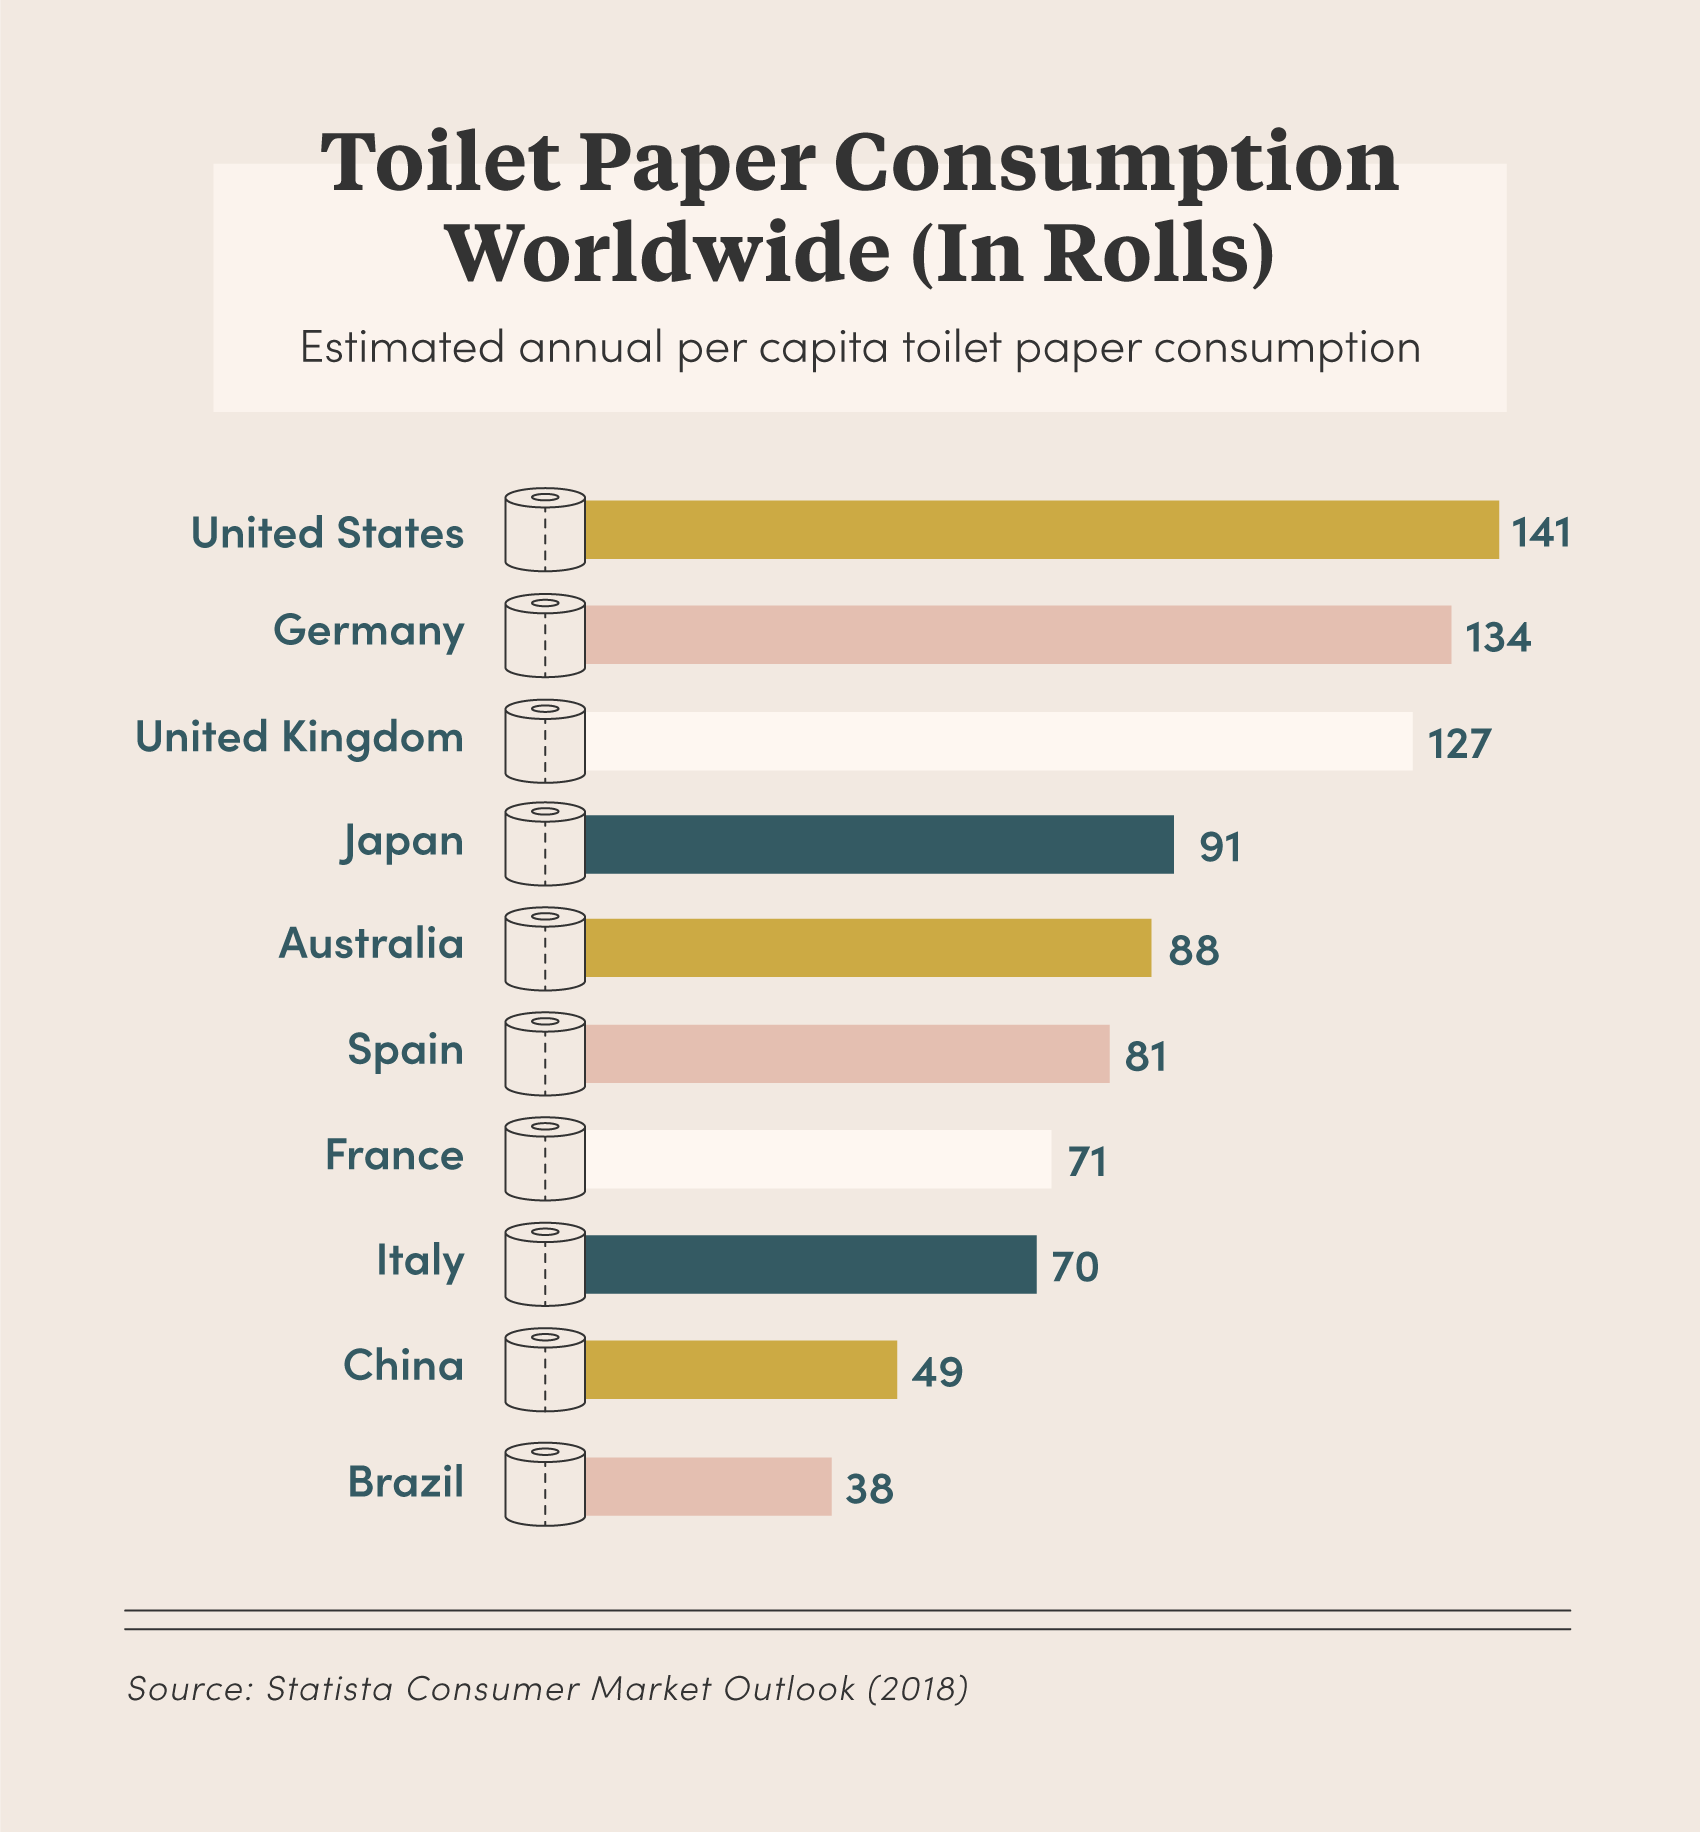 Toilet paper consumption